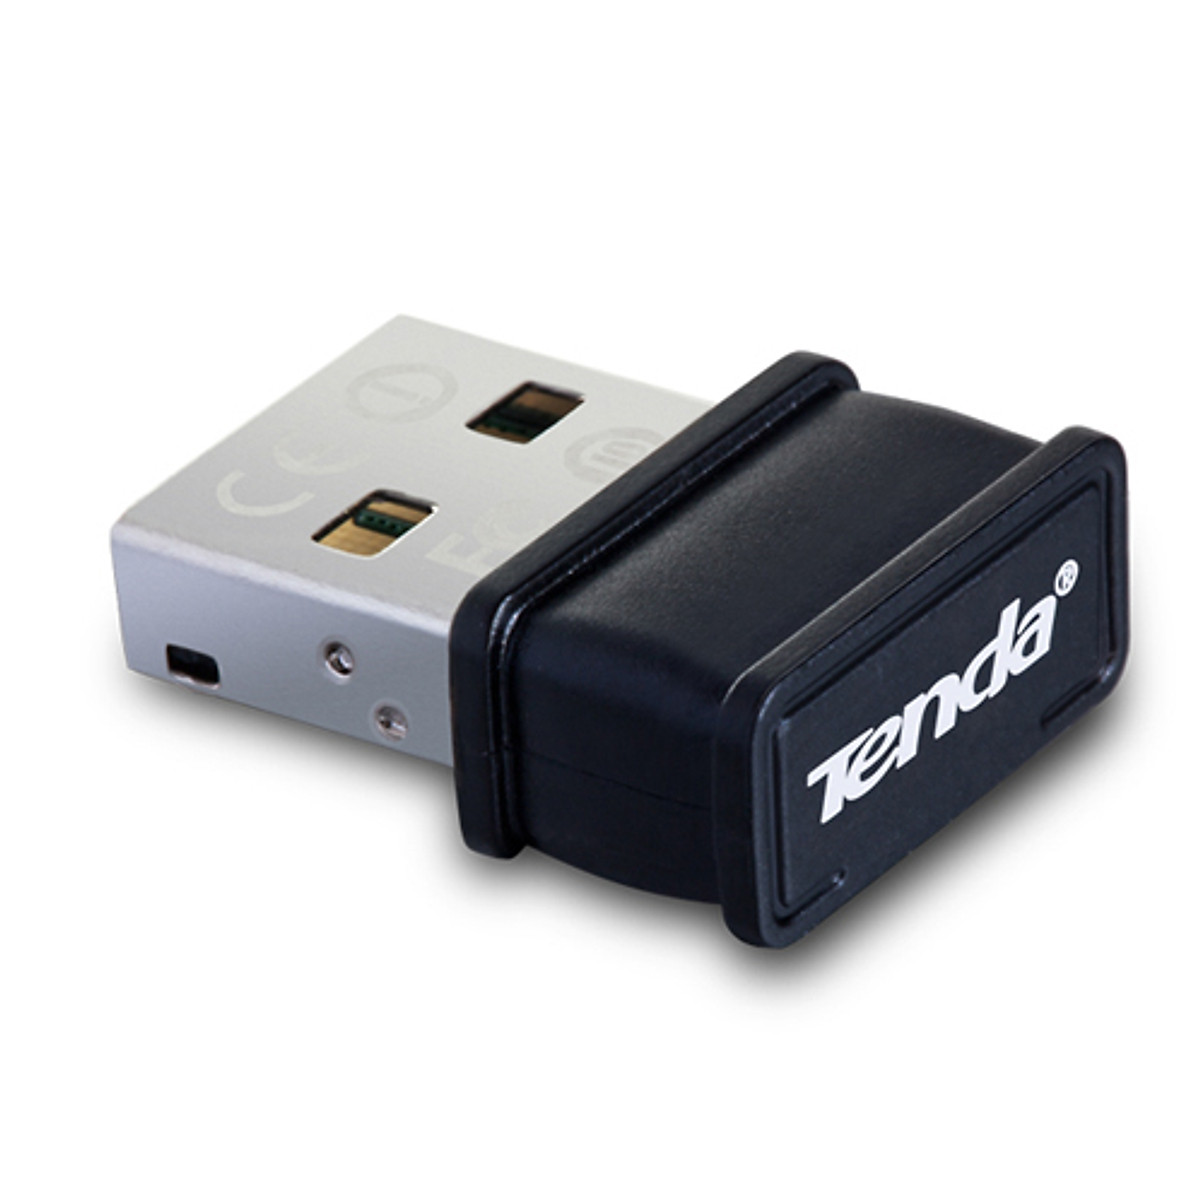 USB thu sóng wifi 150Mbps tenda w311mi nano - (bảo hành 3 năm) - vienthonghn